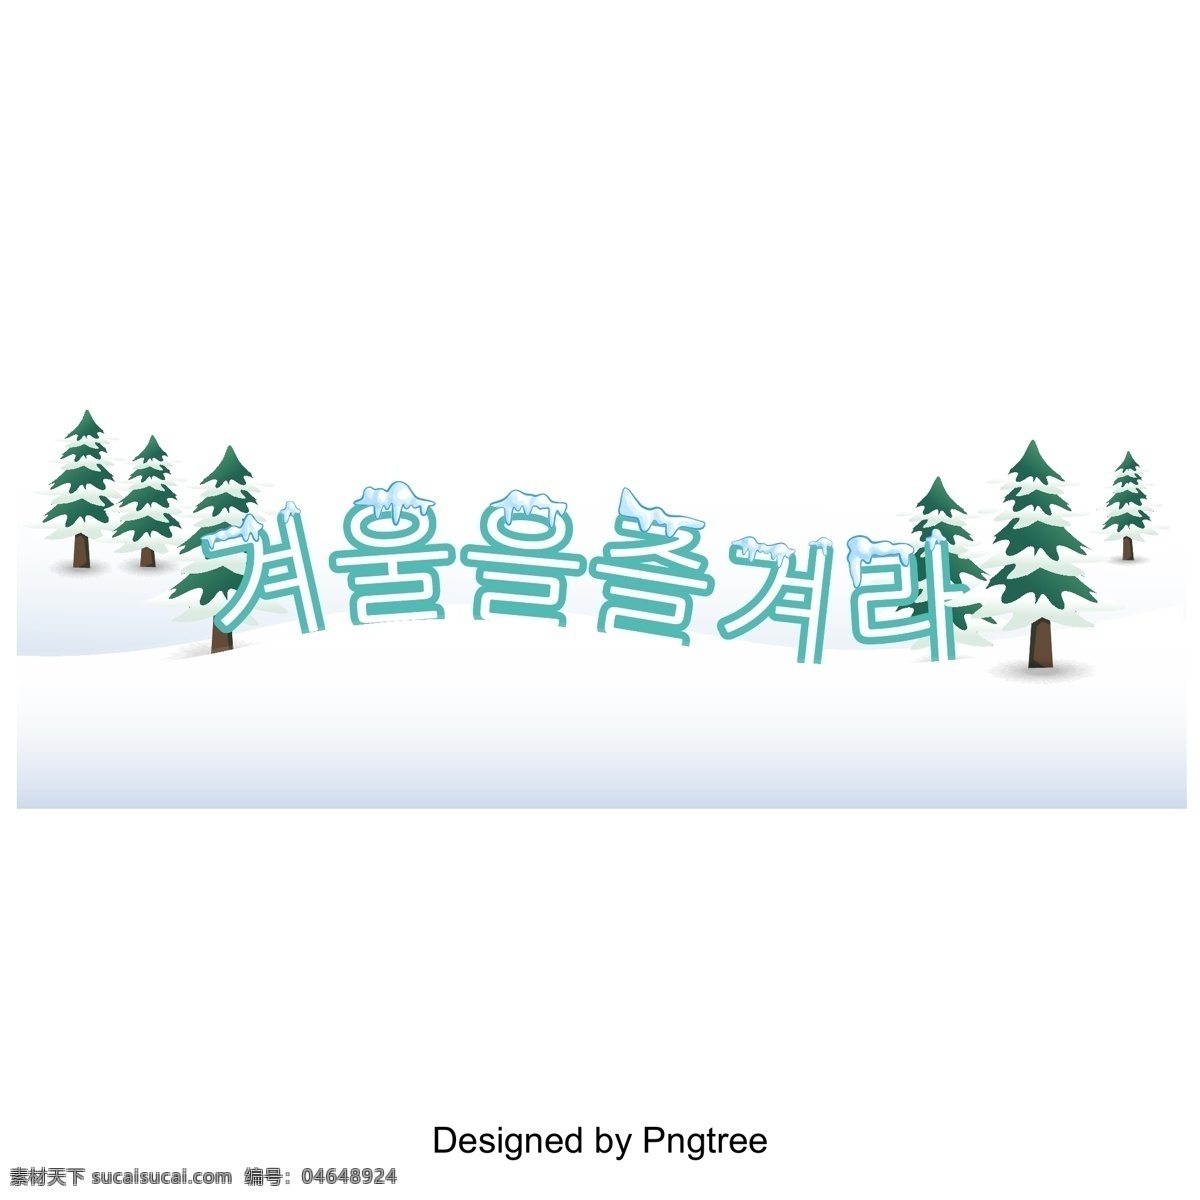 冬季 雪 蓝色 字体 冬季里 喜欢在冬天 标签 标题 树 松树 冰